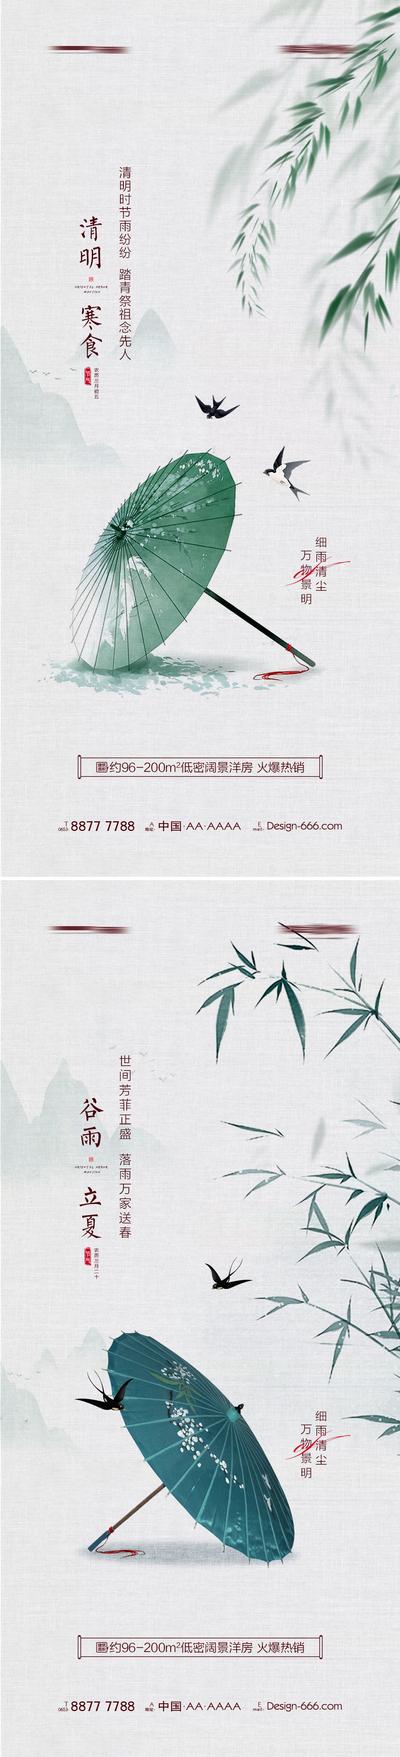 南门网 海报 地产 中国传统节日 清明节 寒食 谷雨 立夏 雨伞 柳条 竹子